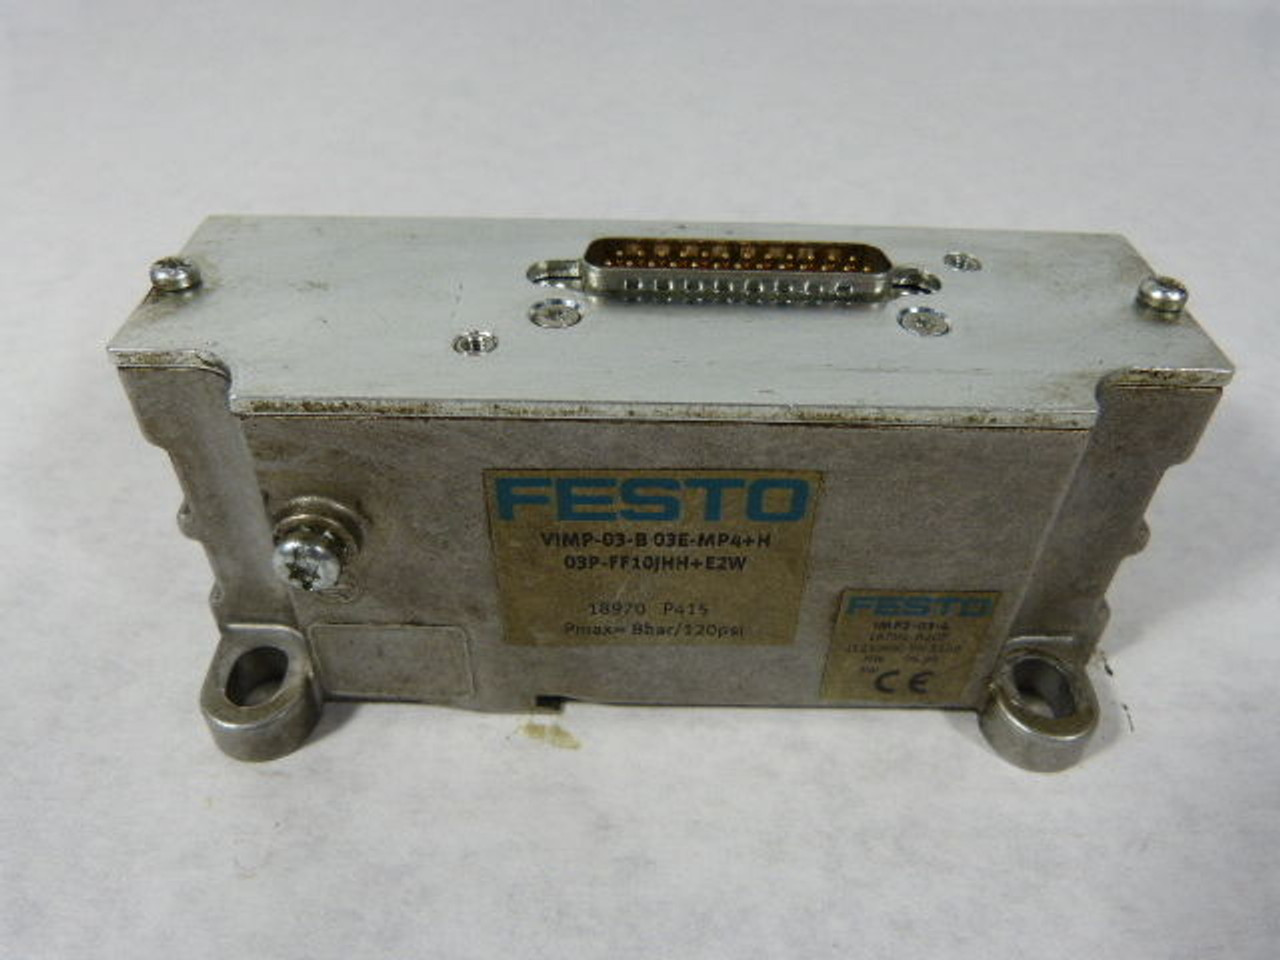 Festo VIMP-03-B03E-MP4-H03P-FF10JHH?? Control Module USED